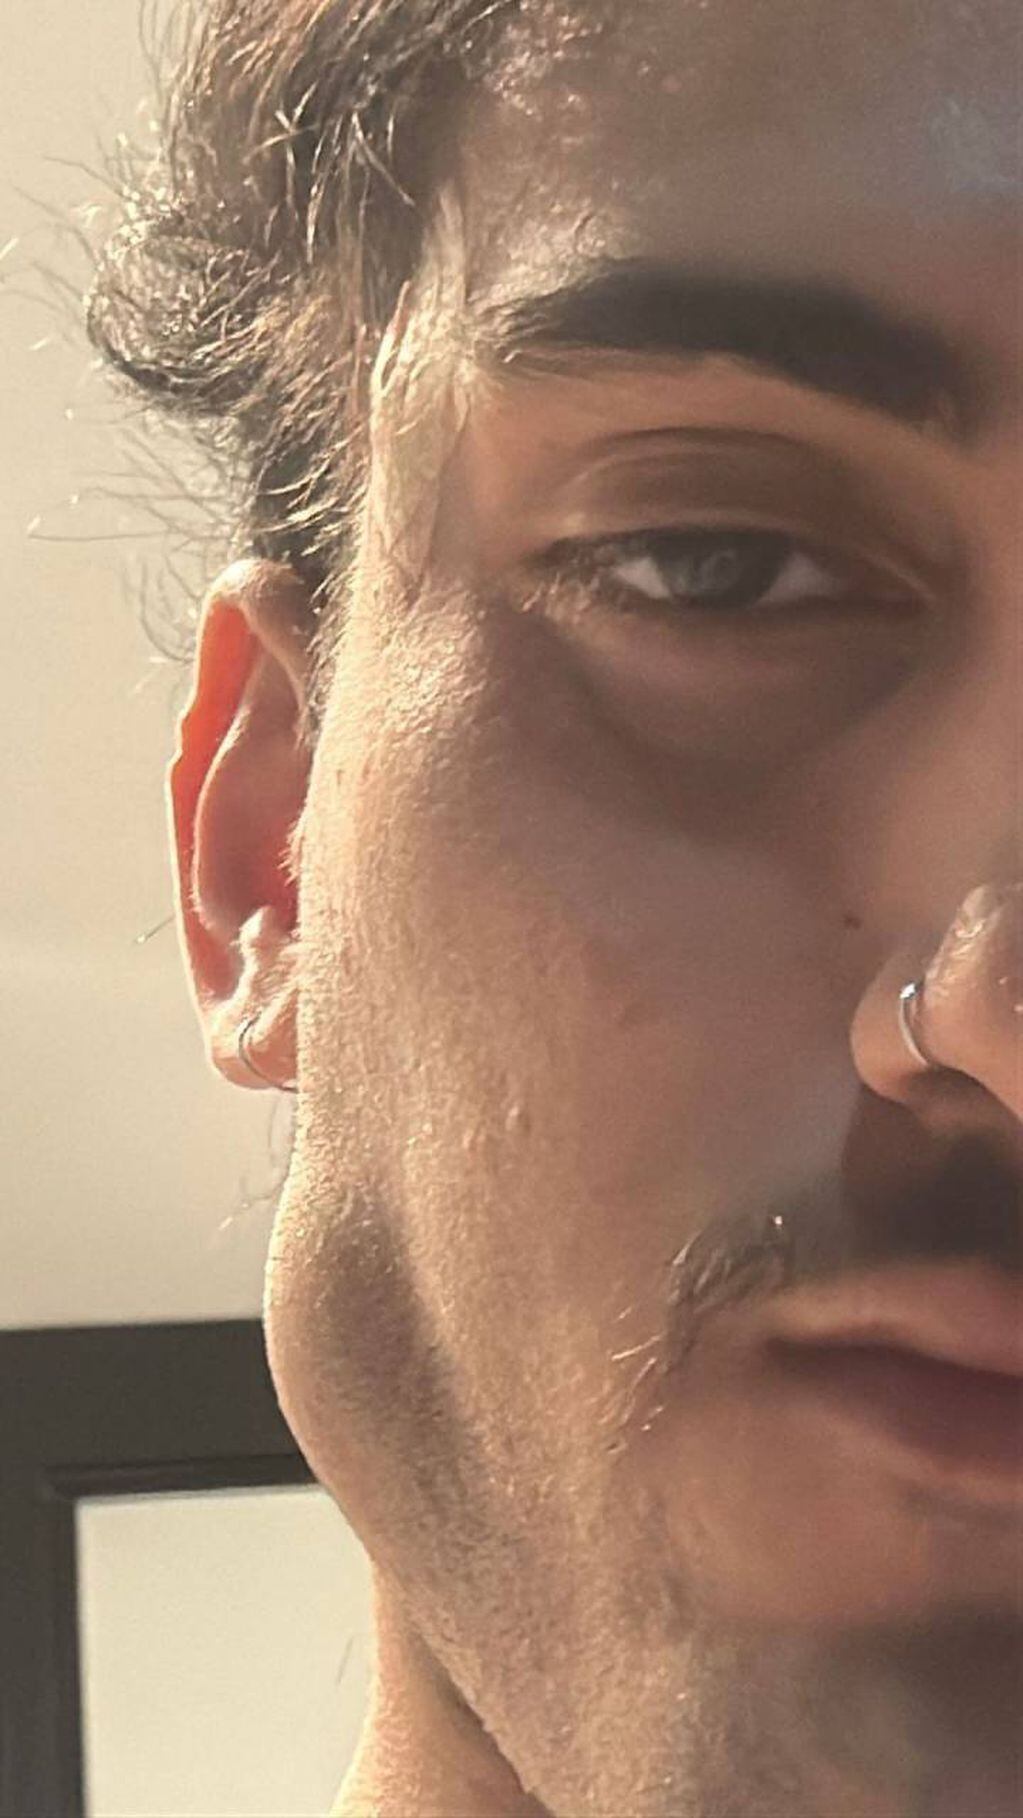 El ex "Gran Hermano" se sacó una selfie a centímetros de la cara para mostrar su nuevo perfil.